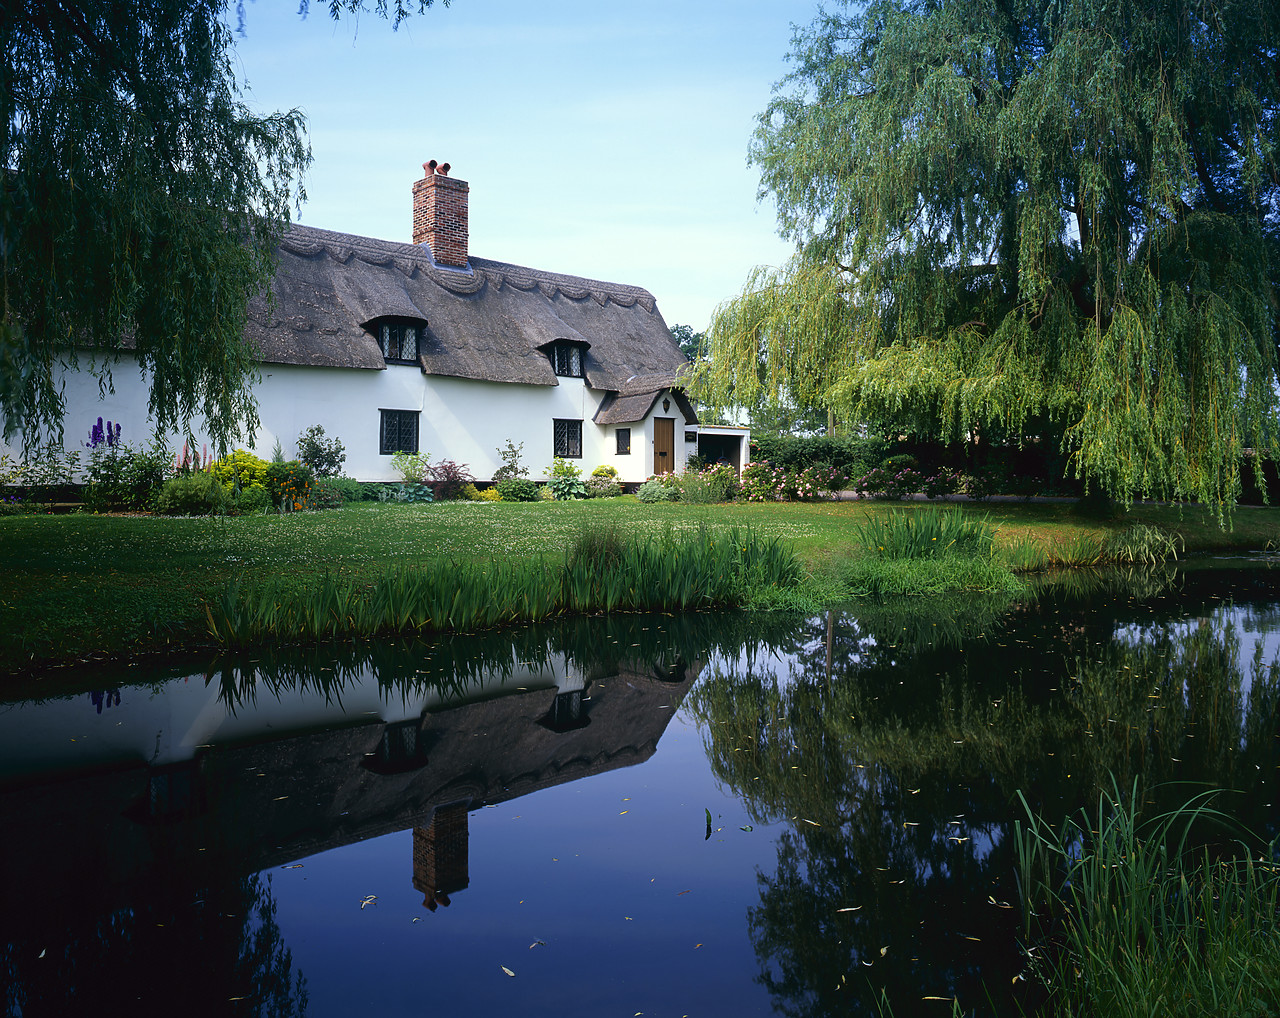 #970214-1 - Thatched Cottage & Pond, Fornham All Saints, Suffolk, England